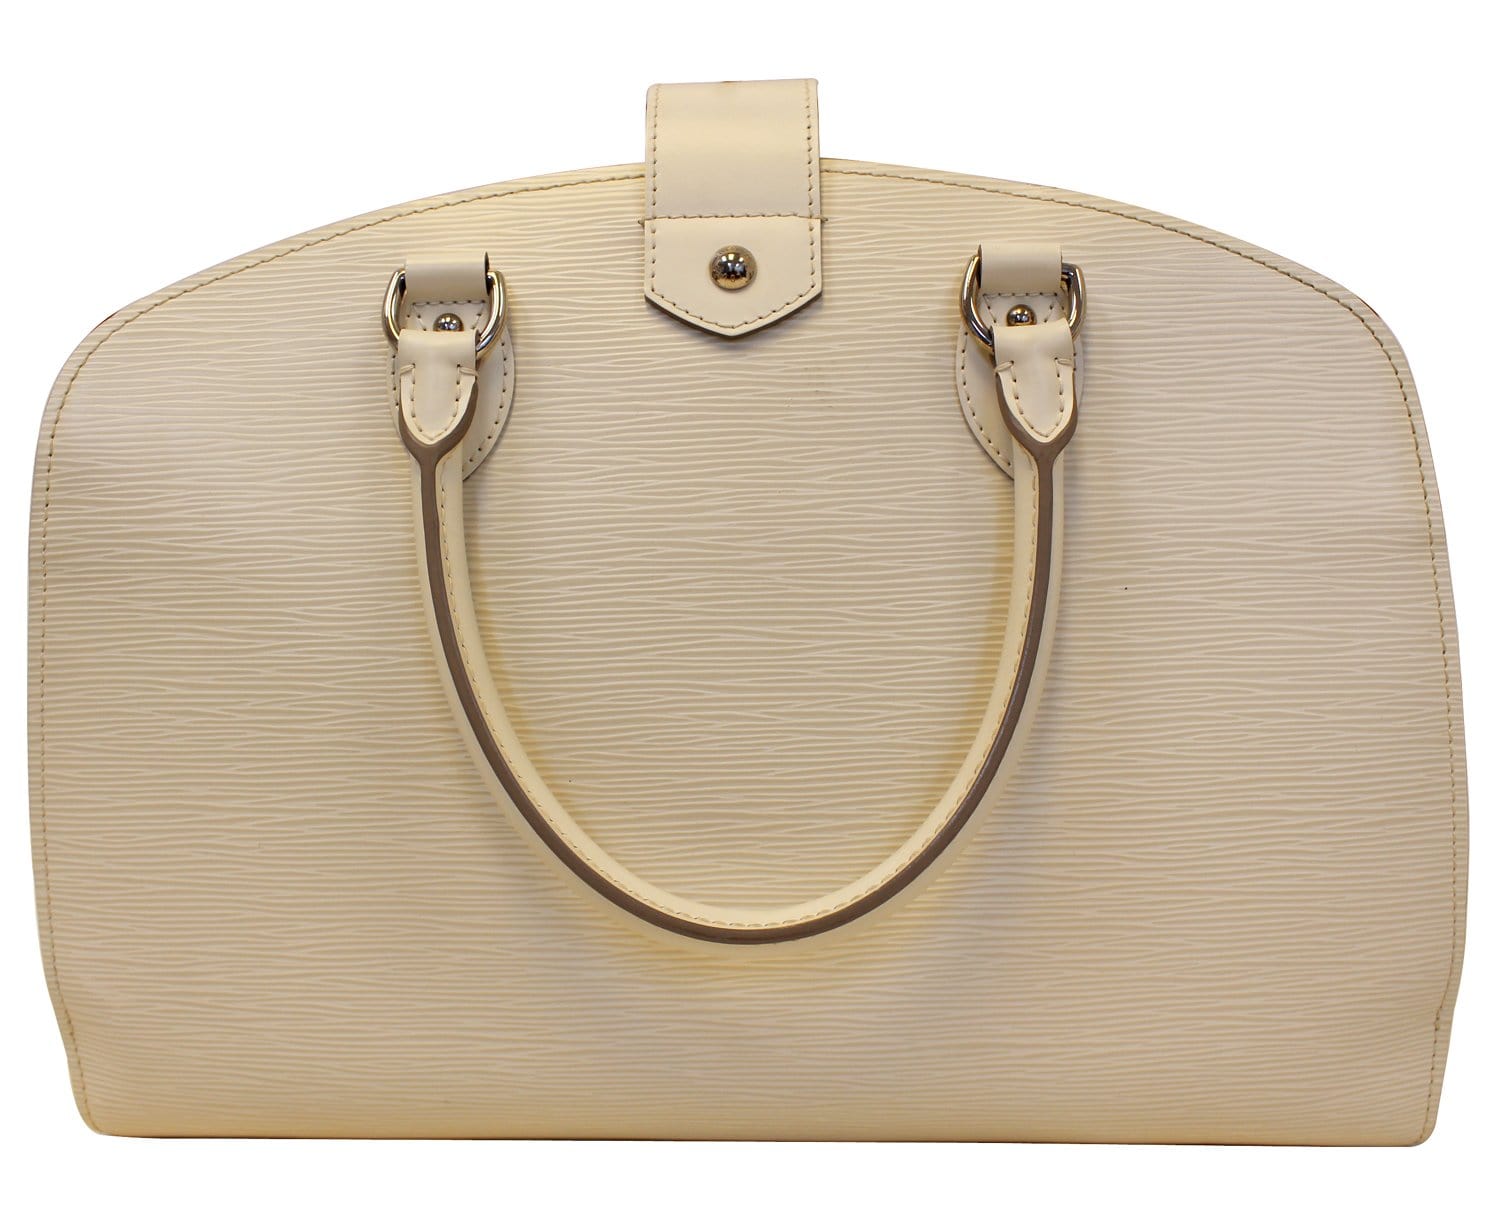 Vintage Louis Vuitton Alma in white EPI leather